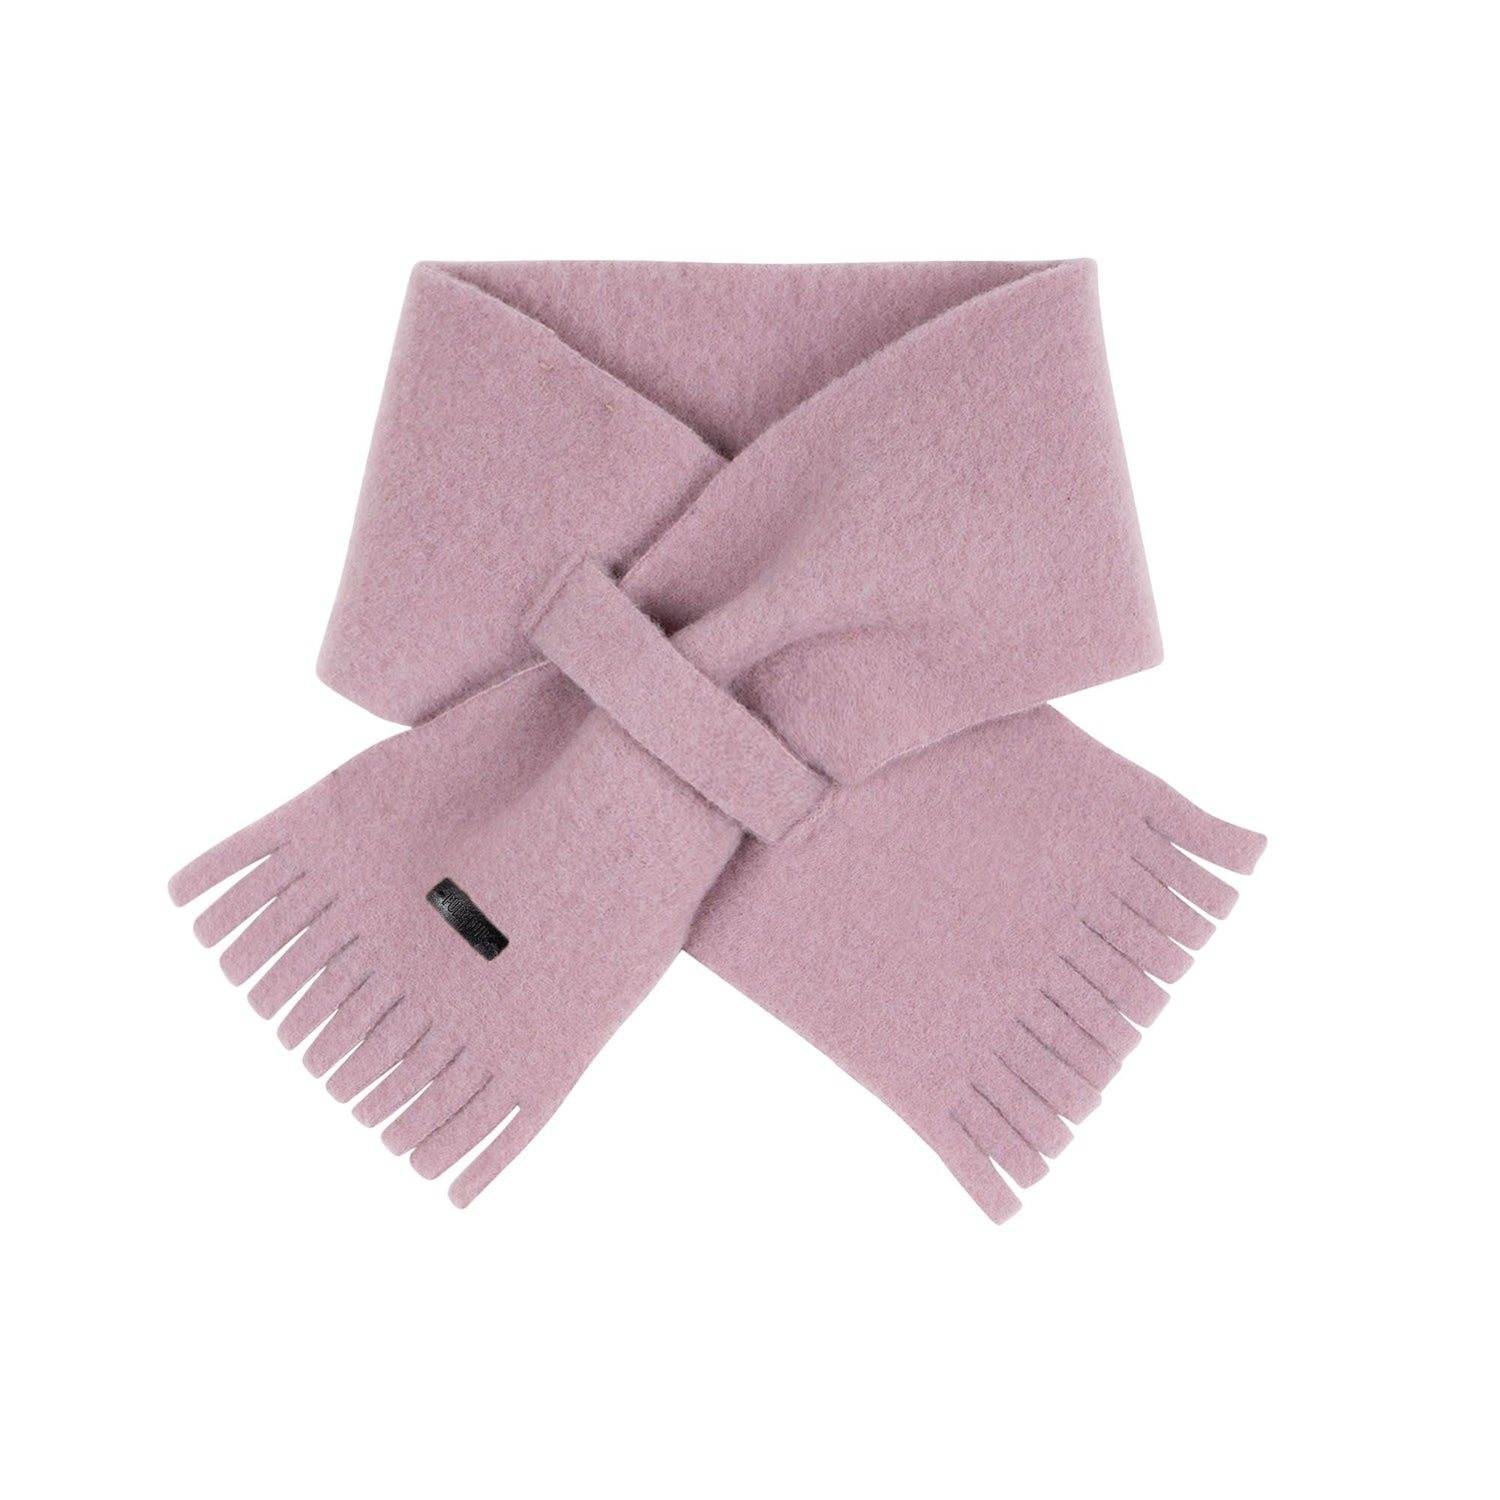 Dieser perfekte Schal aus Bio-Wollfleece von Pure Pure in lila ist so warm und kuschelig, dass der eisige Winter uns nichts mehr anhaben kann! 